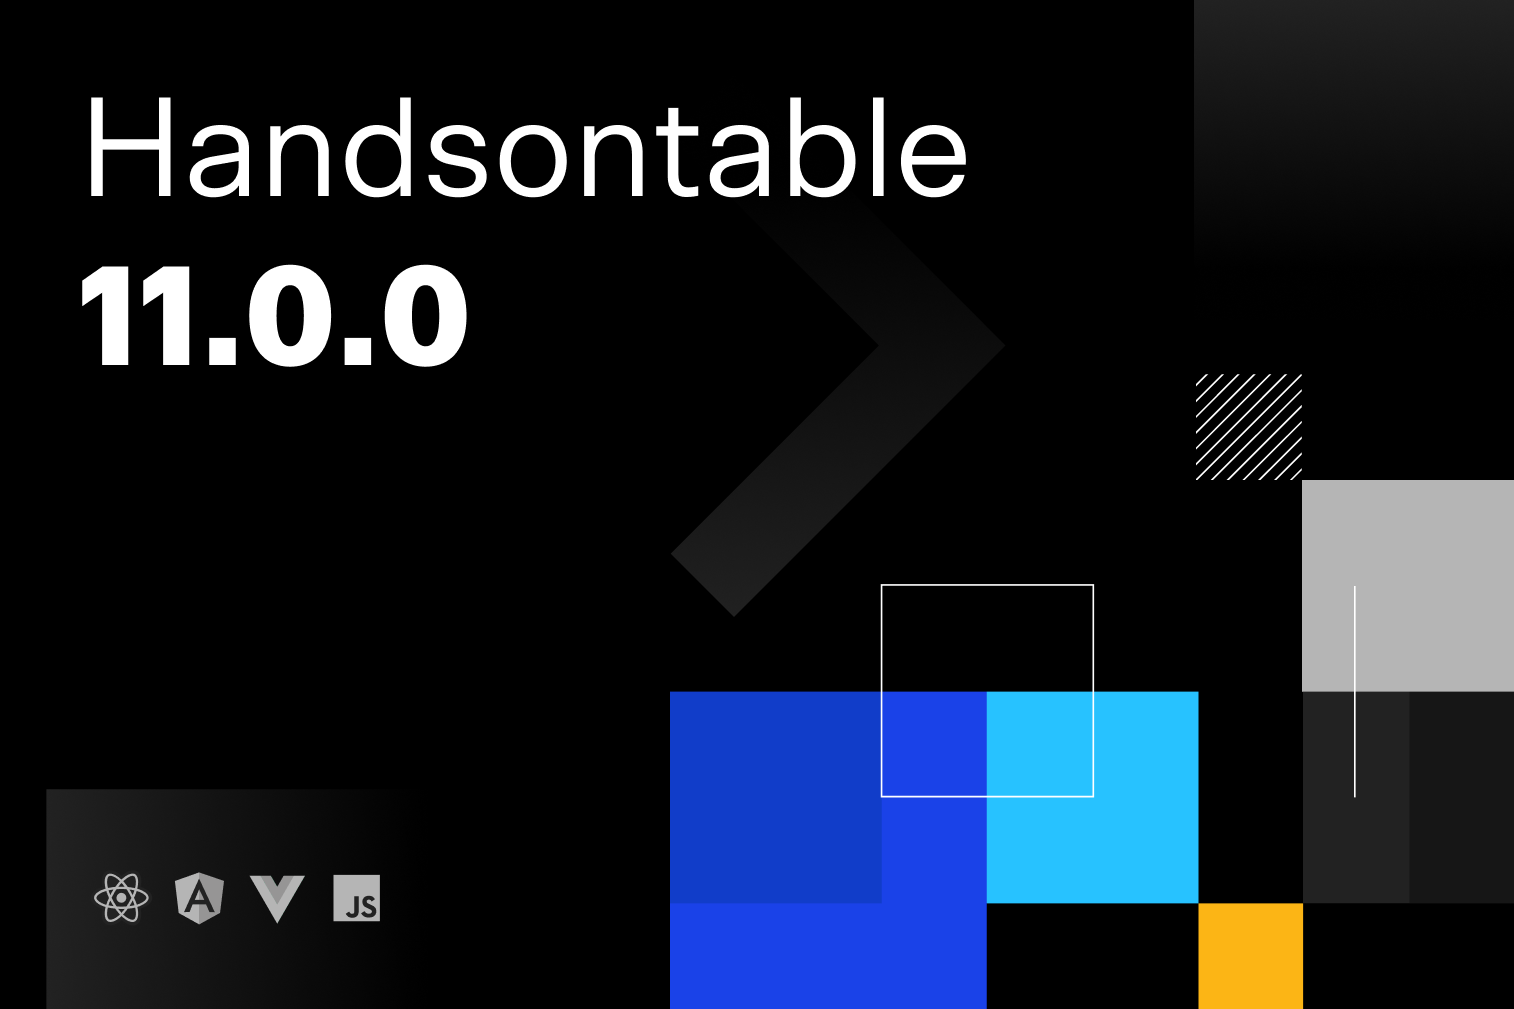 Handsontable 11.0.0 release illustration